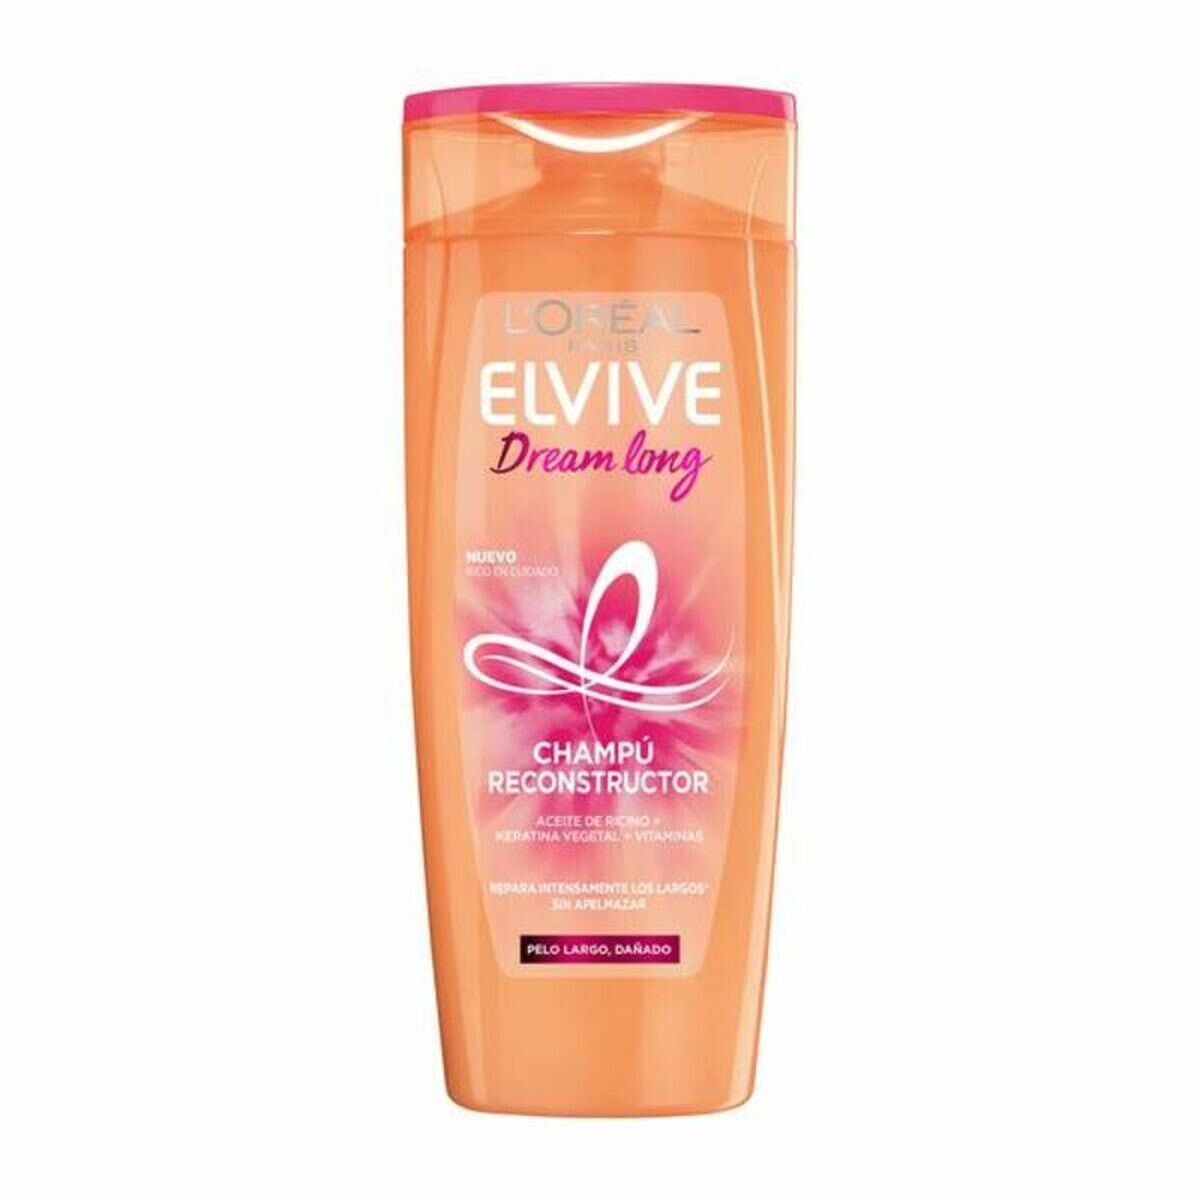 Strengthening Shampoo L'Oreal Make Up Elvive Dream Long 285 ml